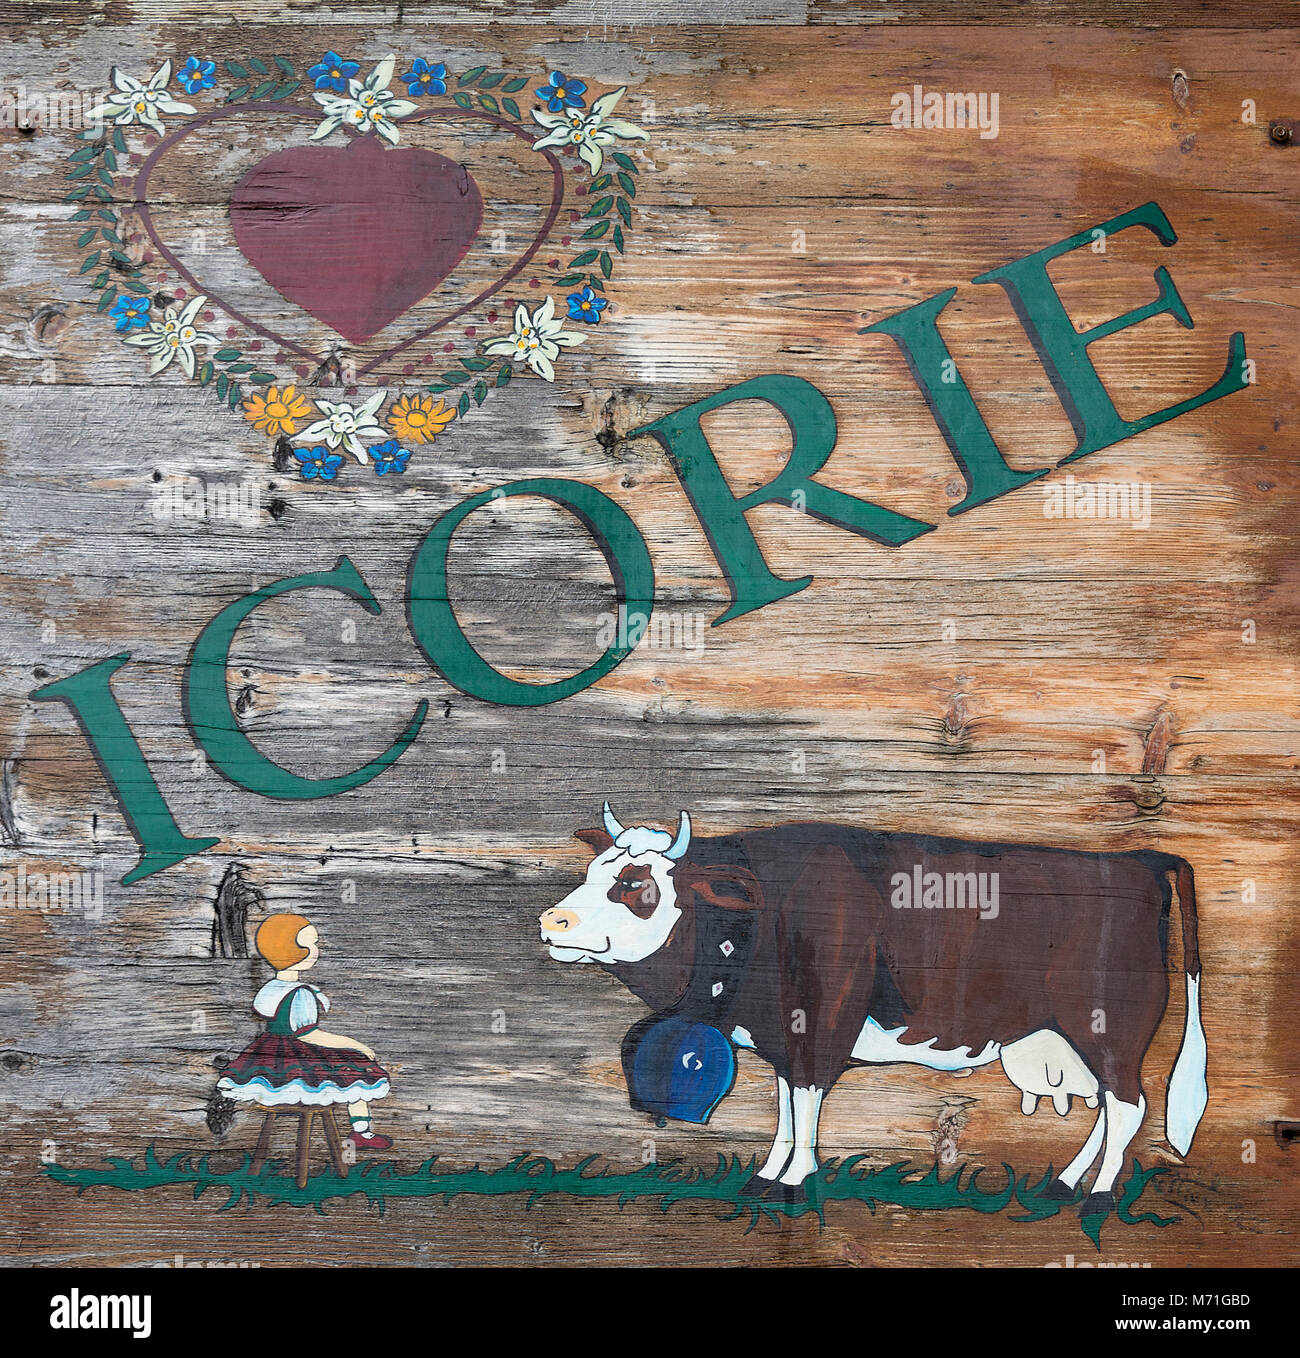 Die ungewöhnliche äußere Zeichen für Icorie ein Geschäft mit Inneneinrichtung Elemente im Chalet Stil in Morzine Haute Savoie Portes du Soleil Frankreich Stockfoto